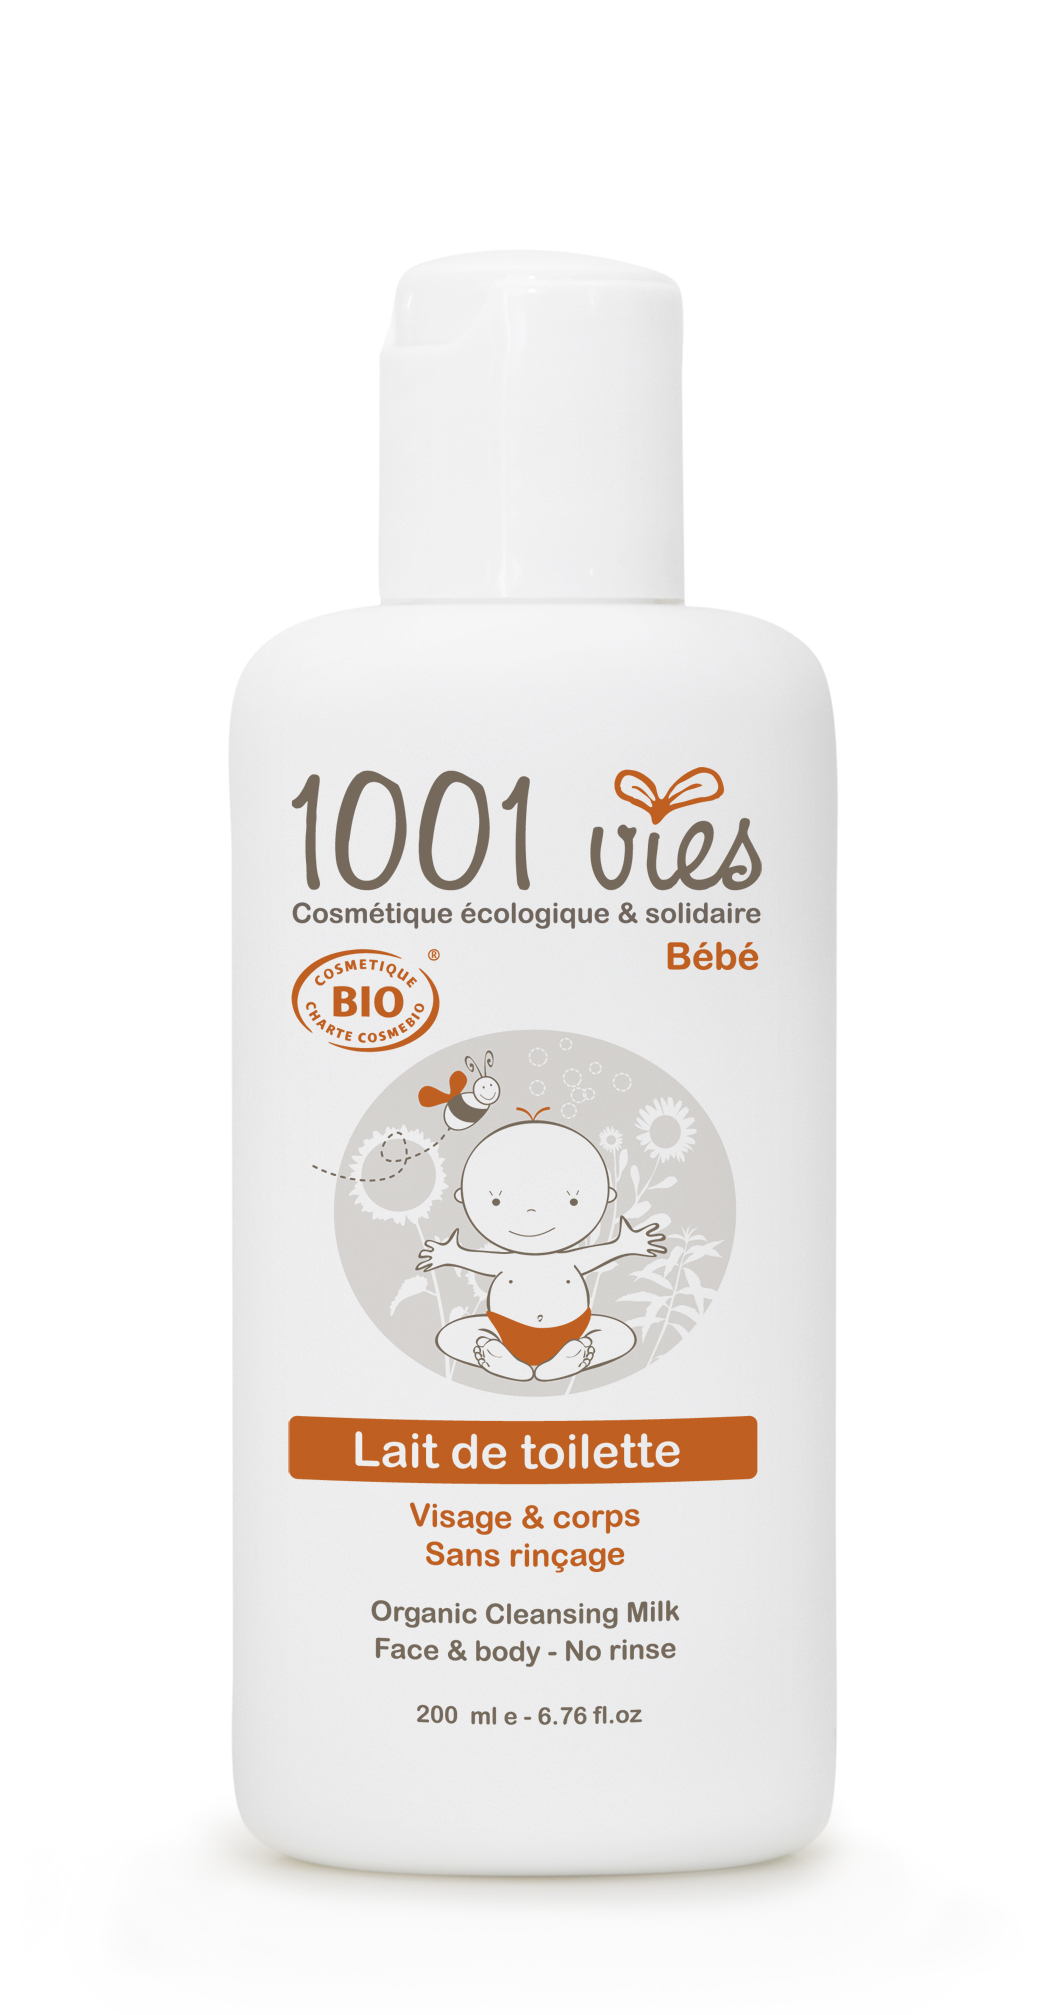 Doux Good - 1001 vies - Lait de toilette pour bebe